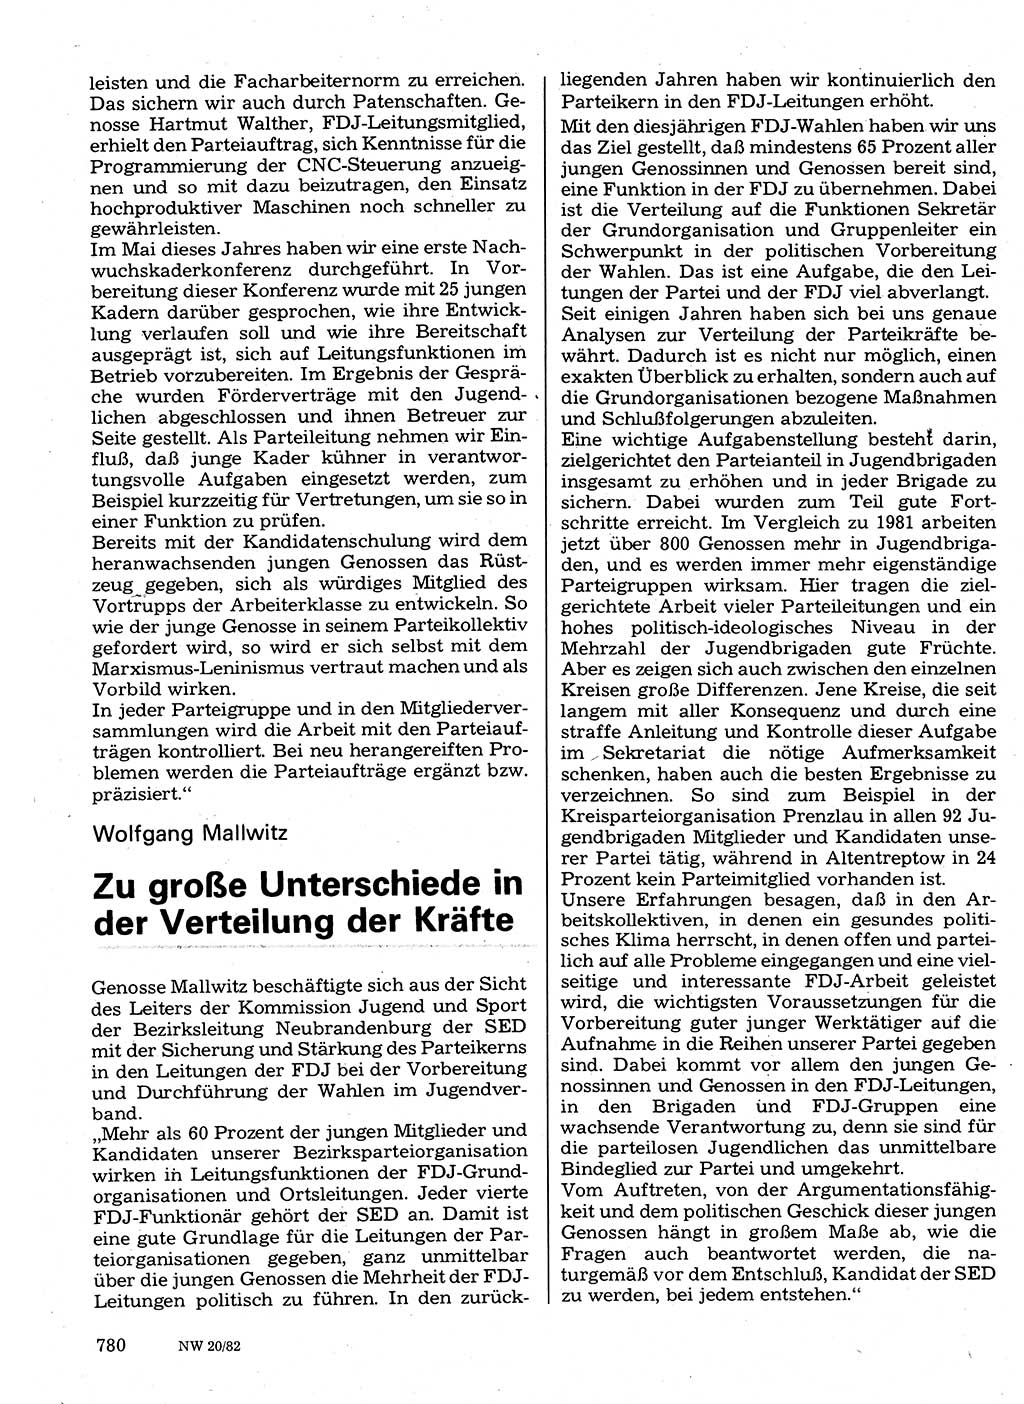 Neuer Weg (NW), Organ des Zentralkomitees (ZK) der SED (Sozialistische Einheitspartei Deutschlands) für Fragen des Parteilebens, 37. Jahrgang [Deutsche Demokratische Republik (DDR)] 1982, Seite 780 (NW ZK SED DDR 1982, S. 780)